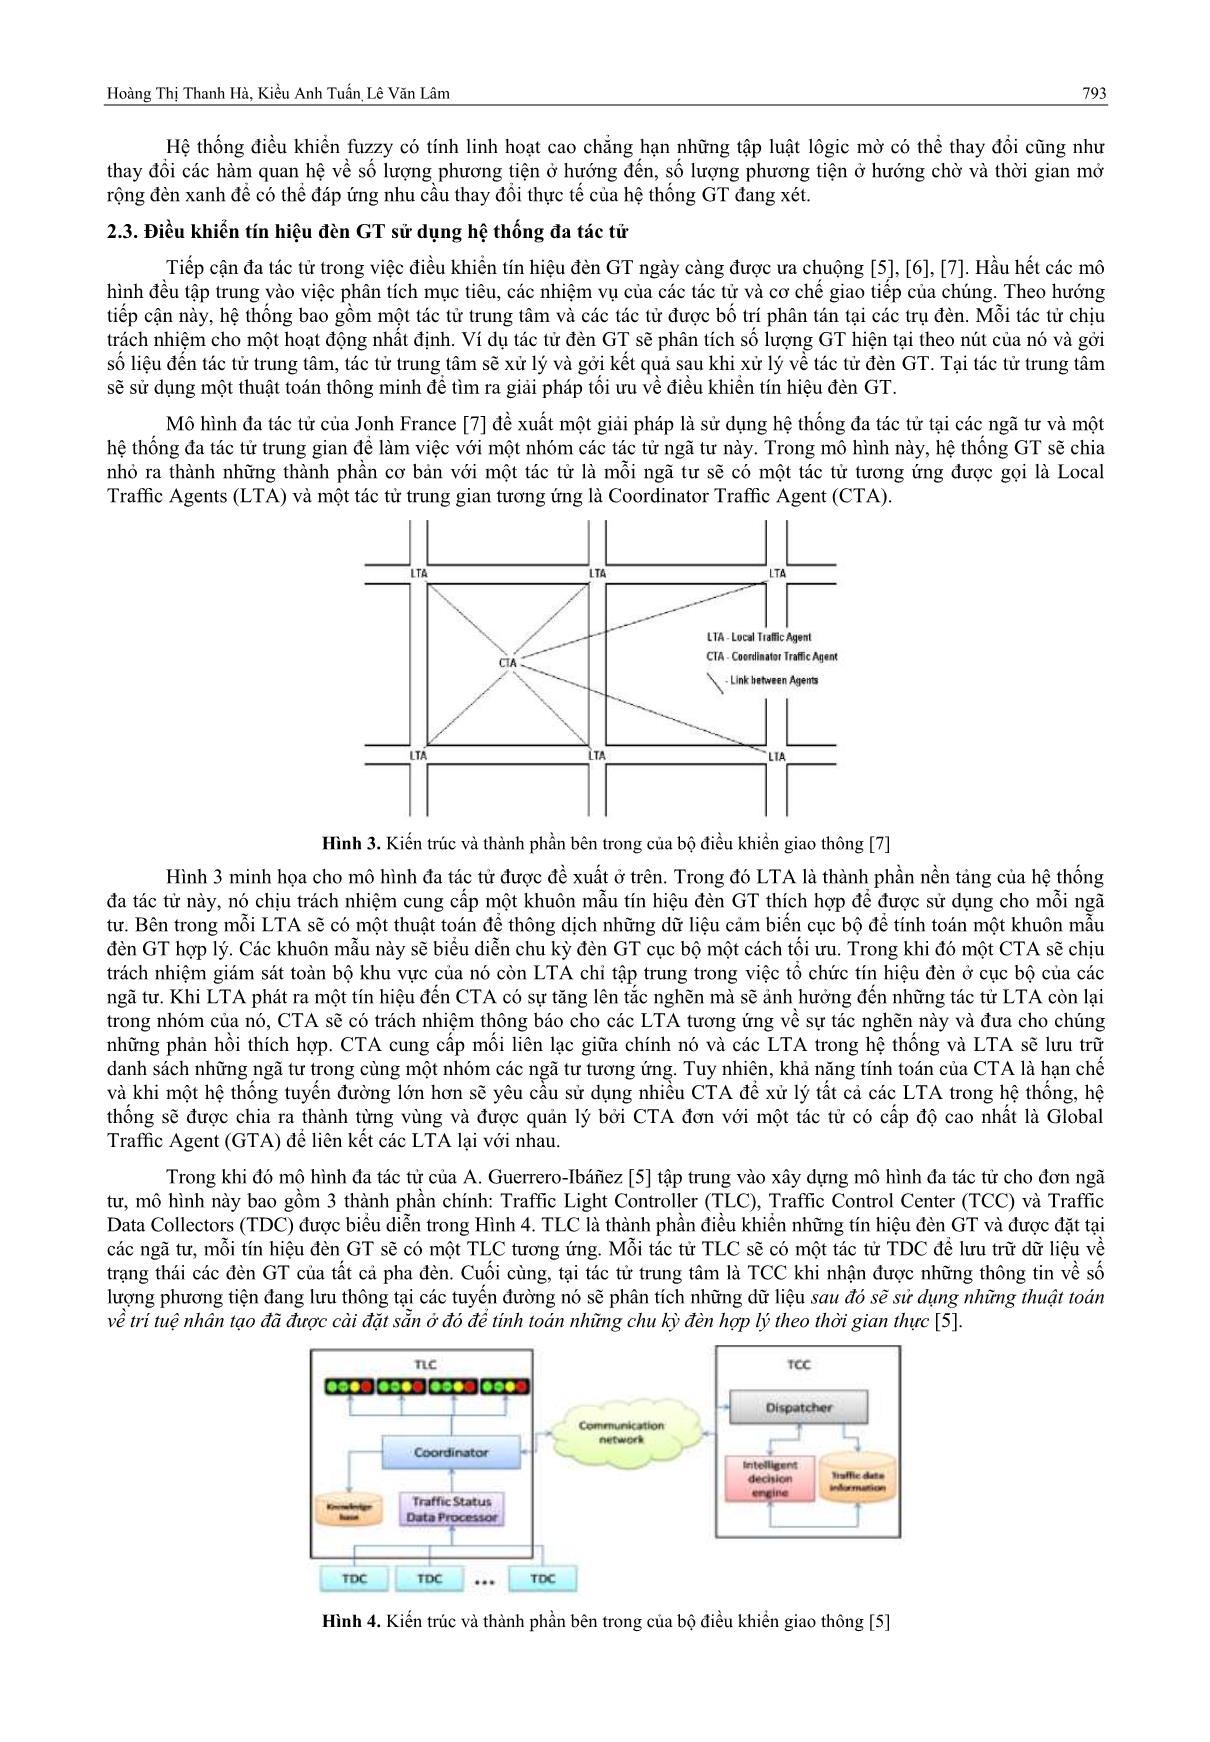 Ứng dụng lôgic mờ xây dựng hệ thống điều khiển tín hiệu đèn giao thông thông minh trang 3